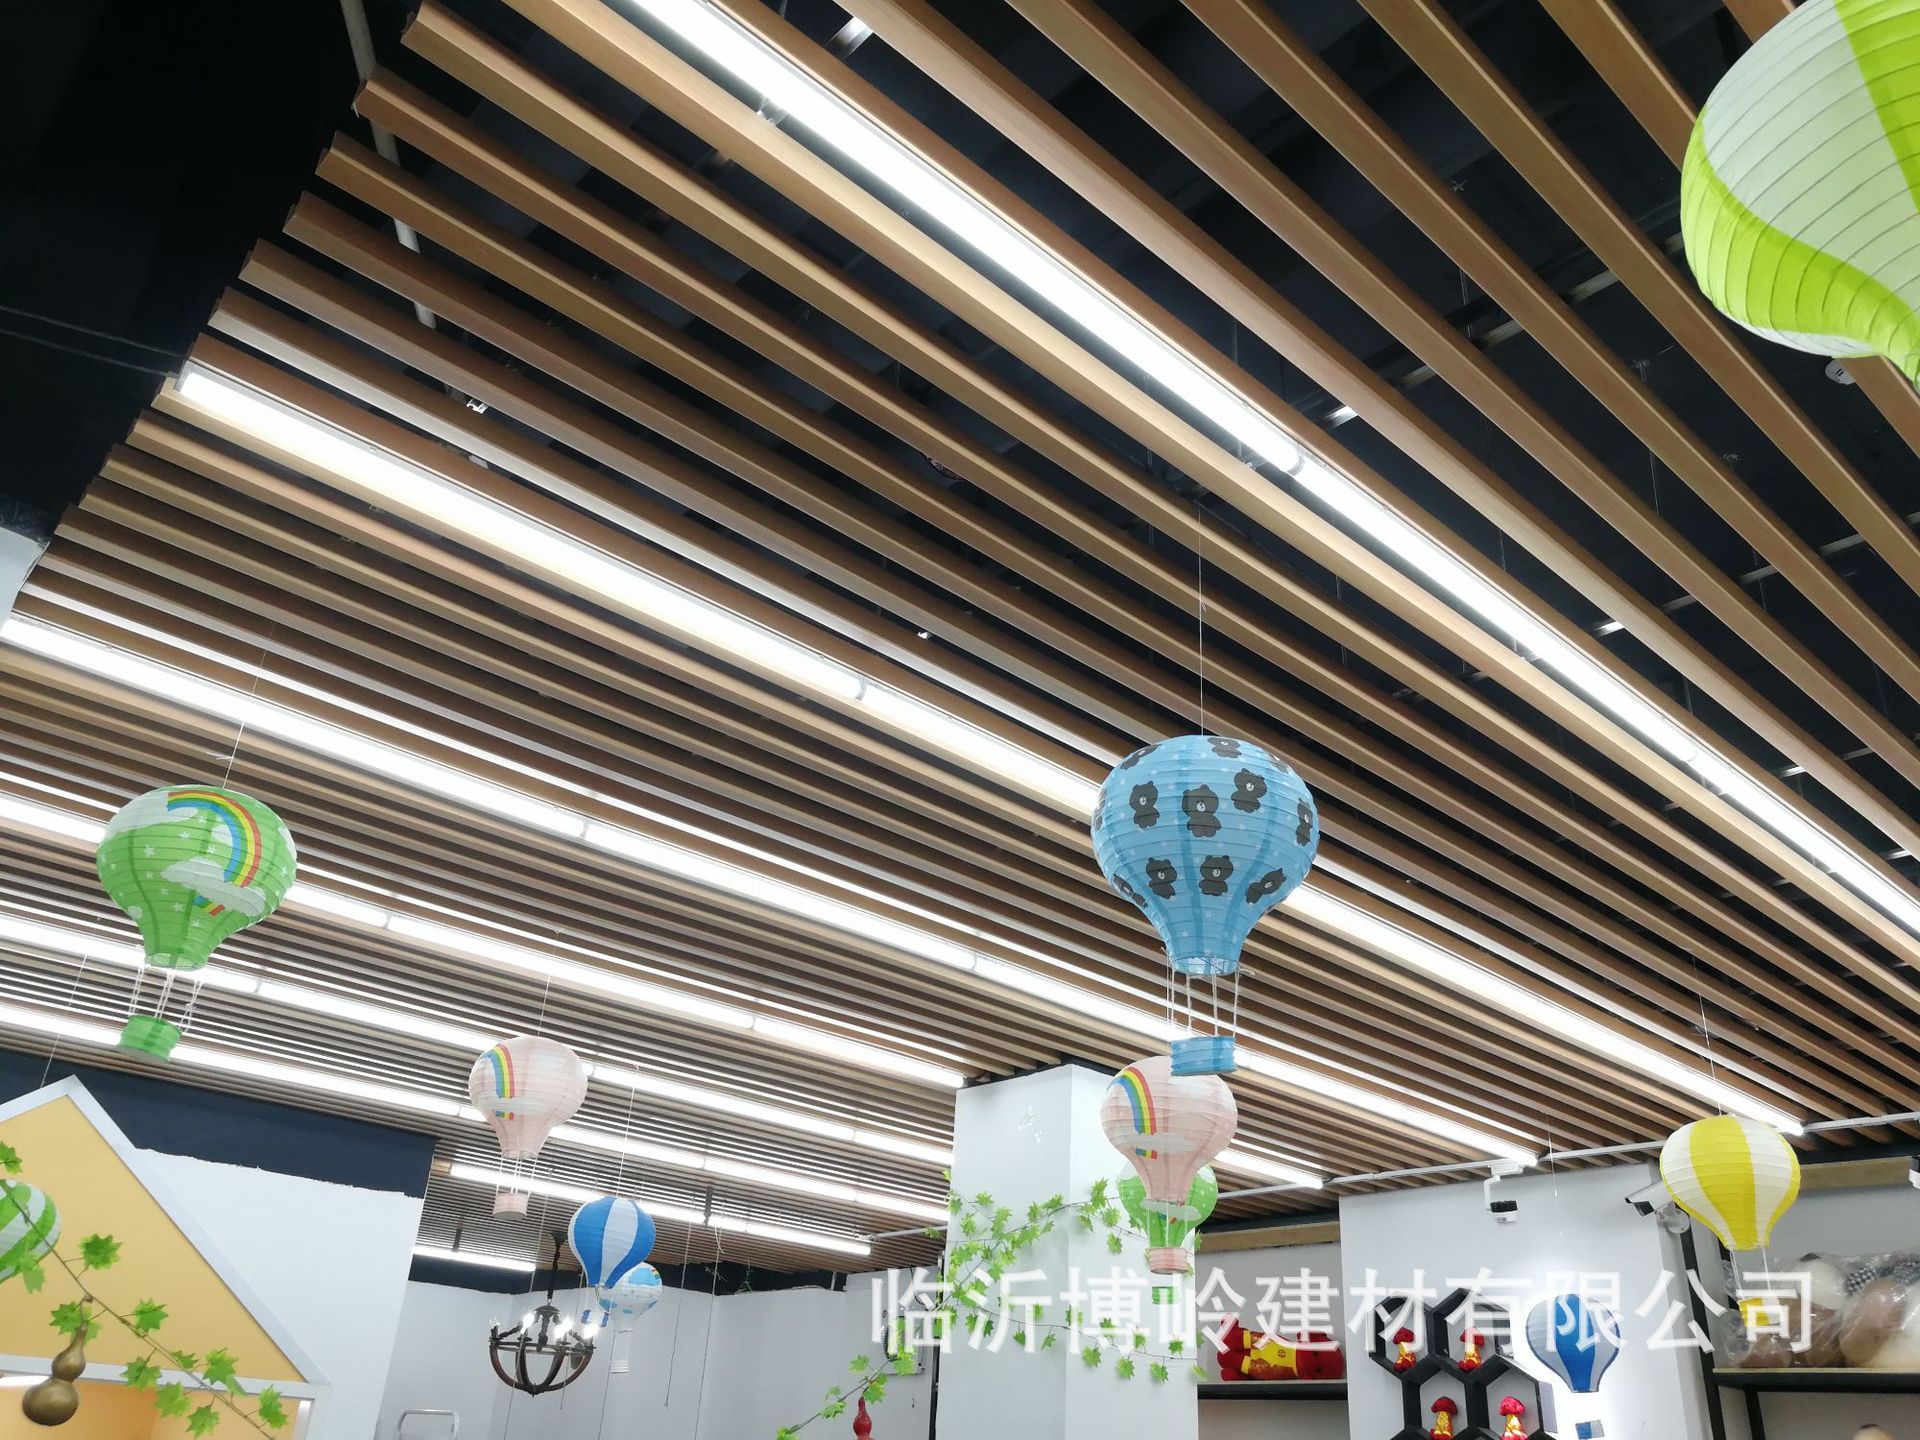 生态木天花 40*20组合天花 装修材料 室内装饰 PVC木塑吊顶材料示例图13